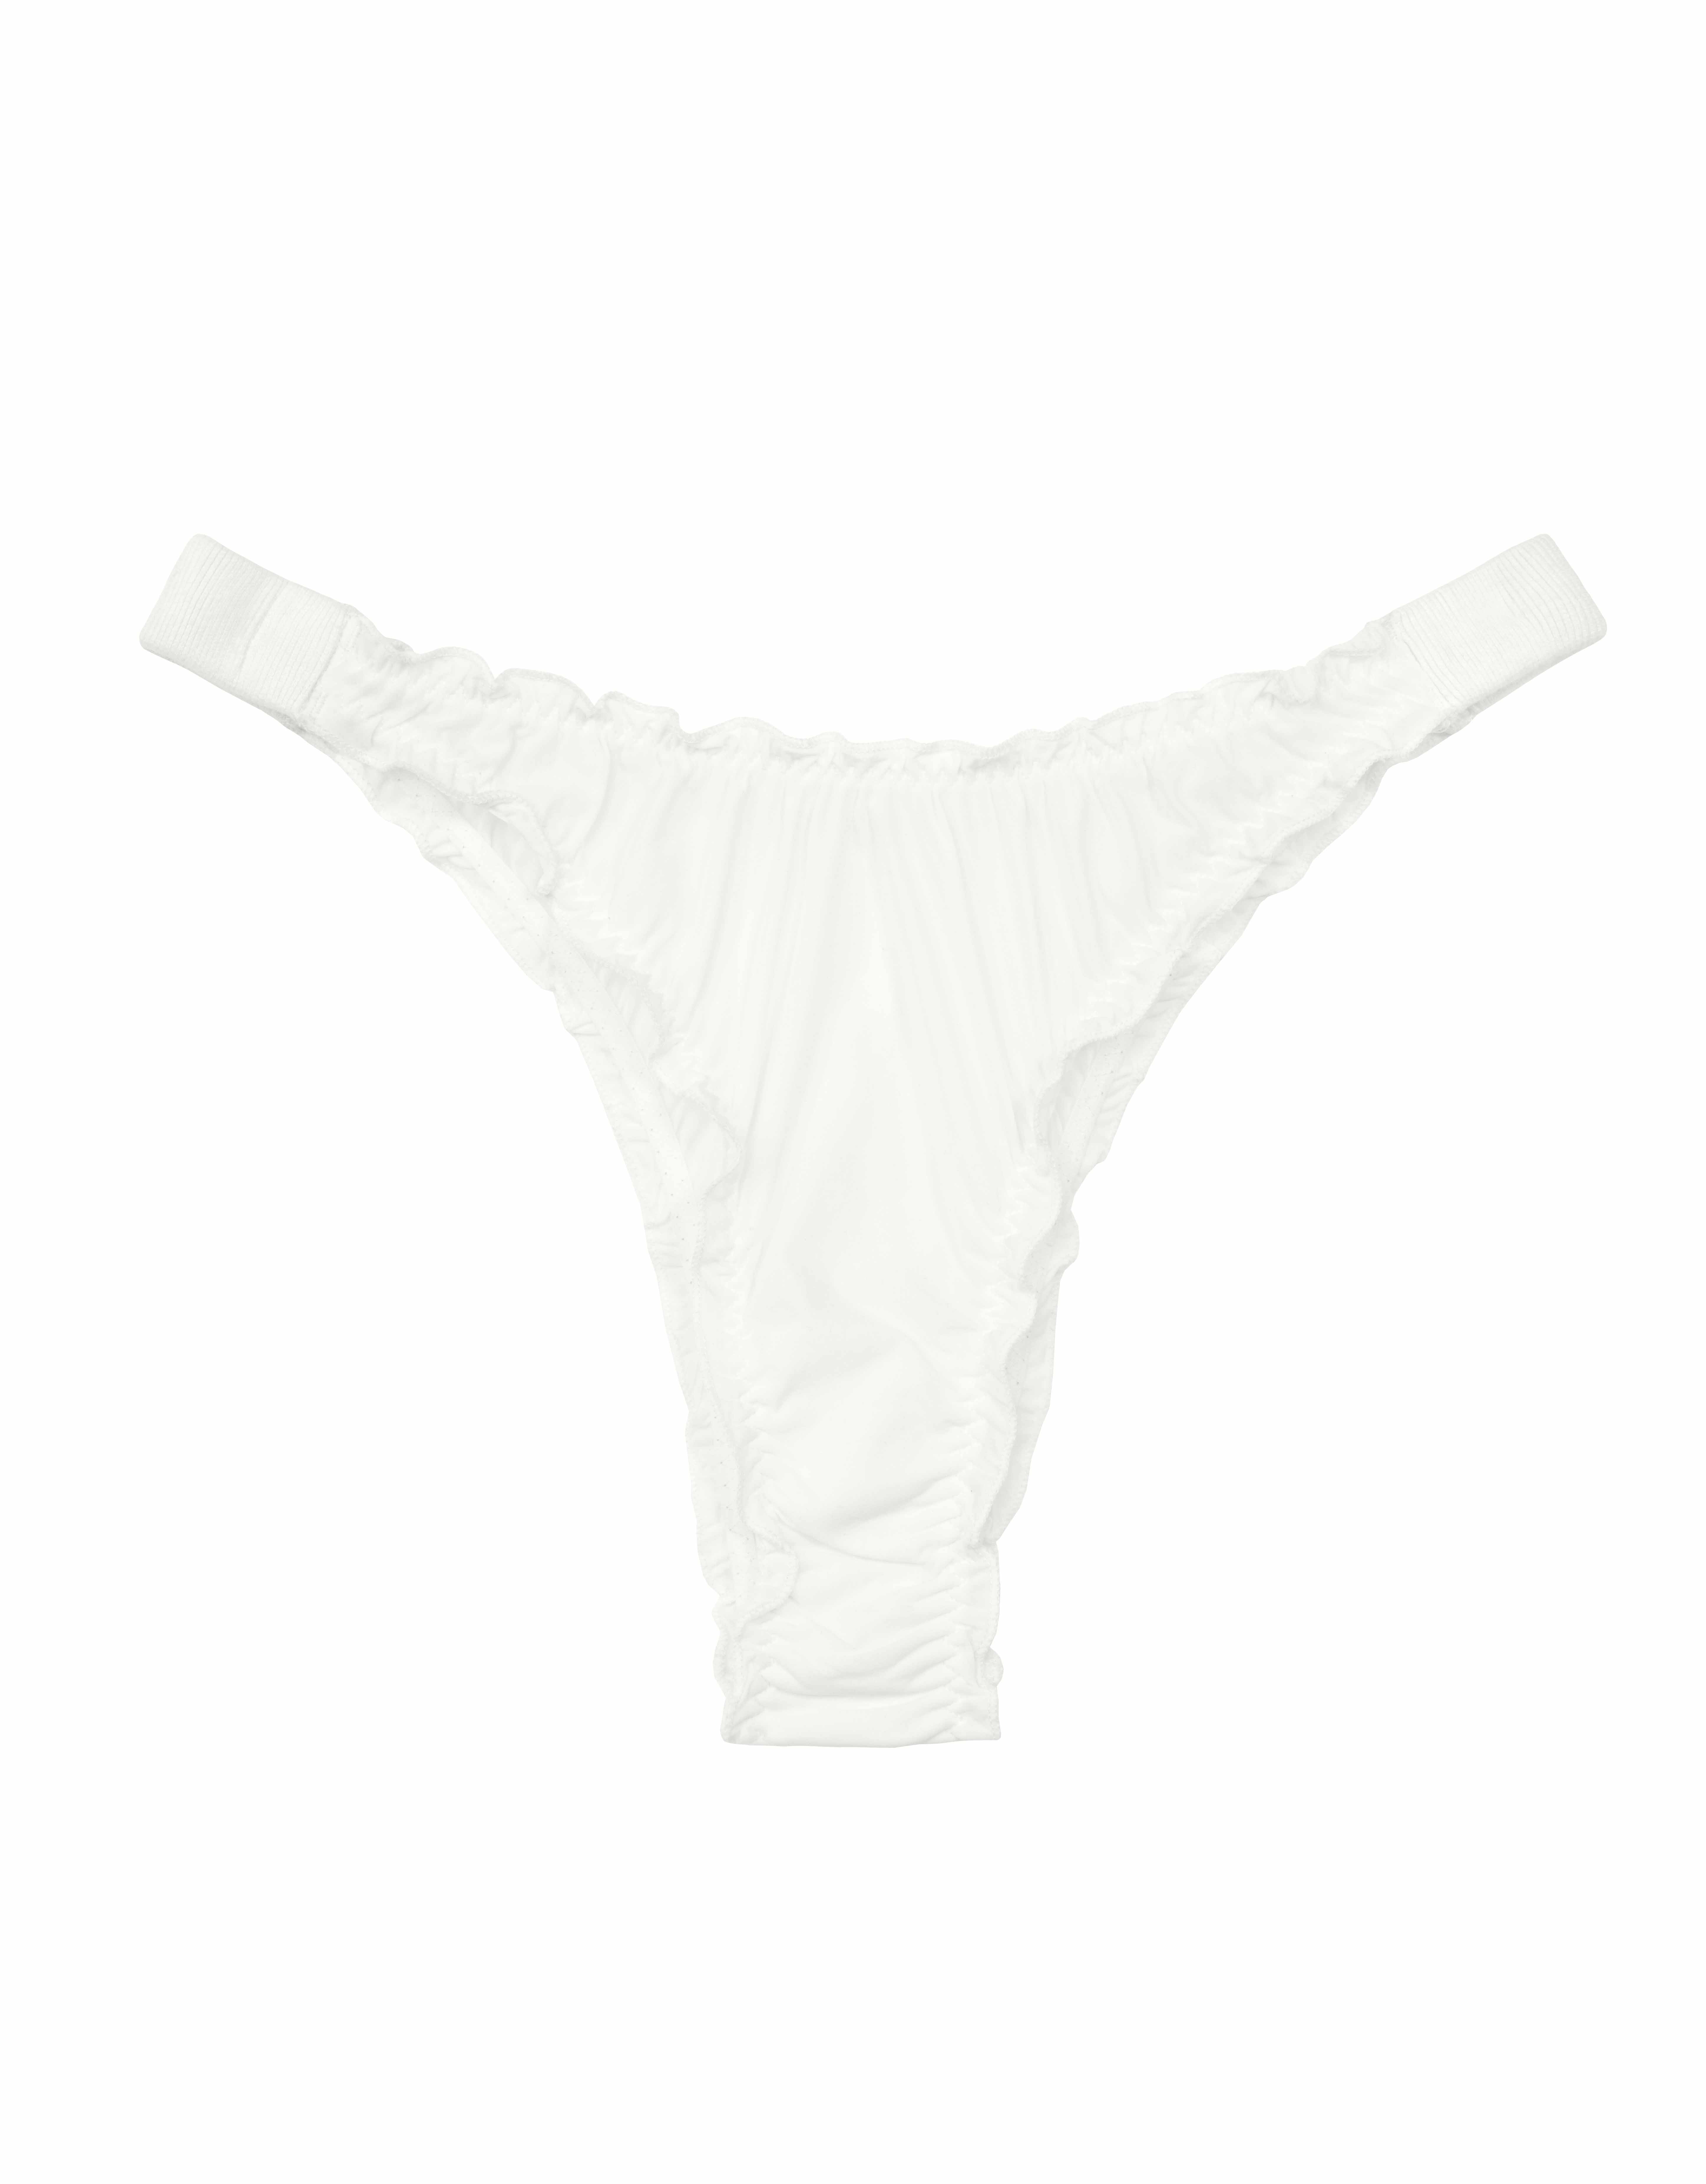 https://www.girlsinparis.com/images/lingerie/soutien-gorge-avec-armatures-melrose_5335_09_a.jpg